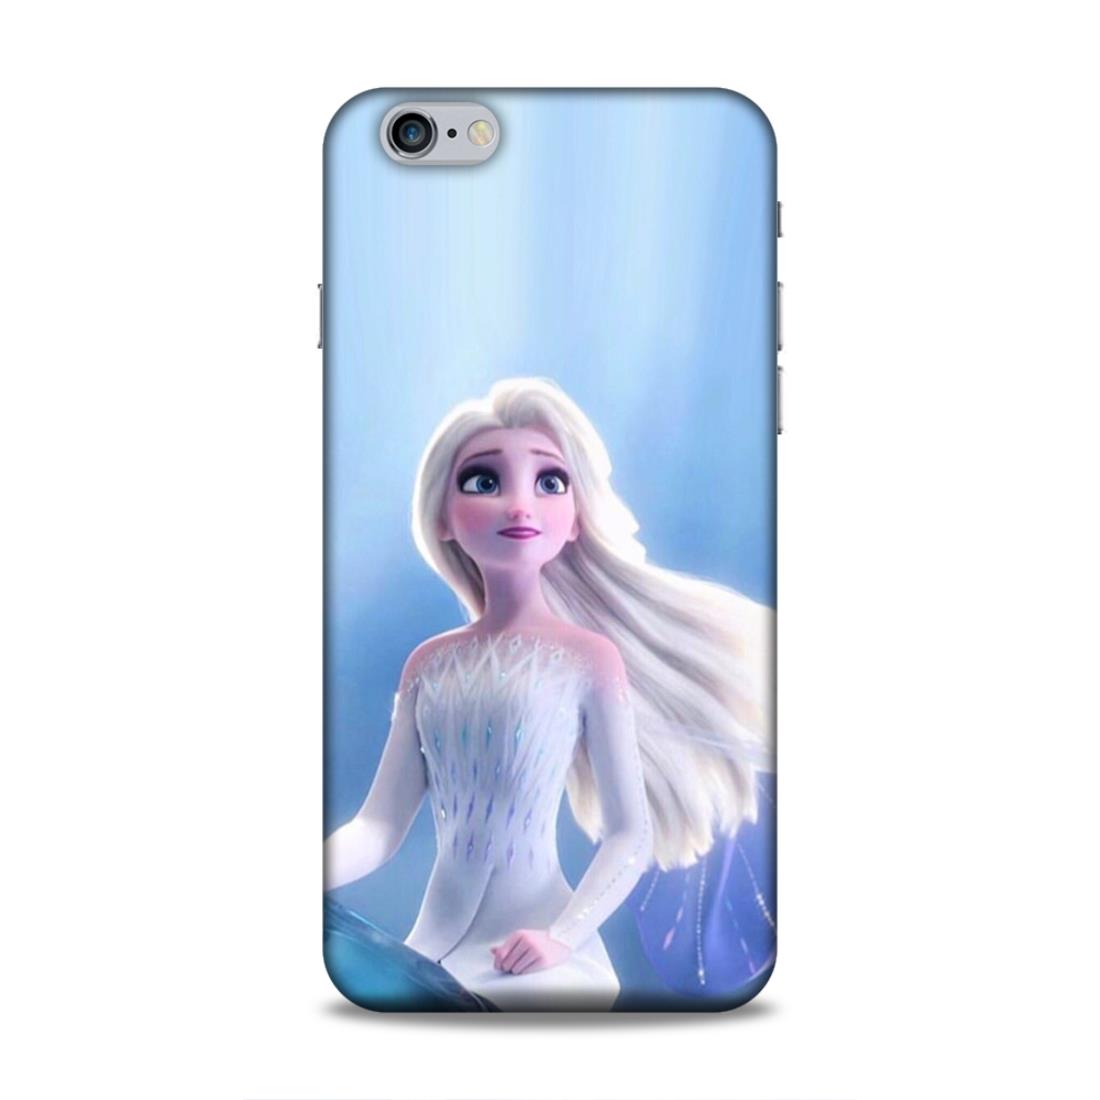 Elsa Frozen Hard Back Case For Apple iPhone 6 Plus / 6s Plus